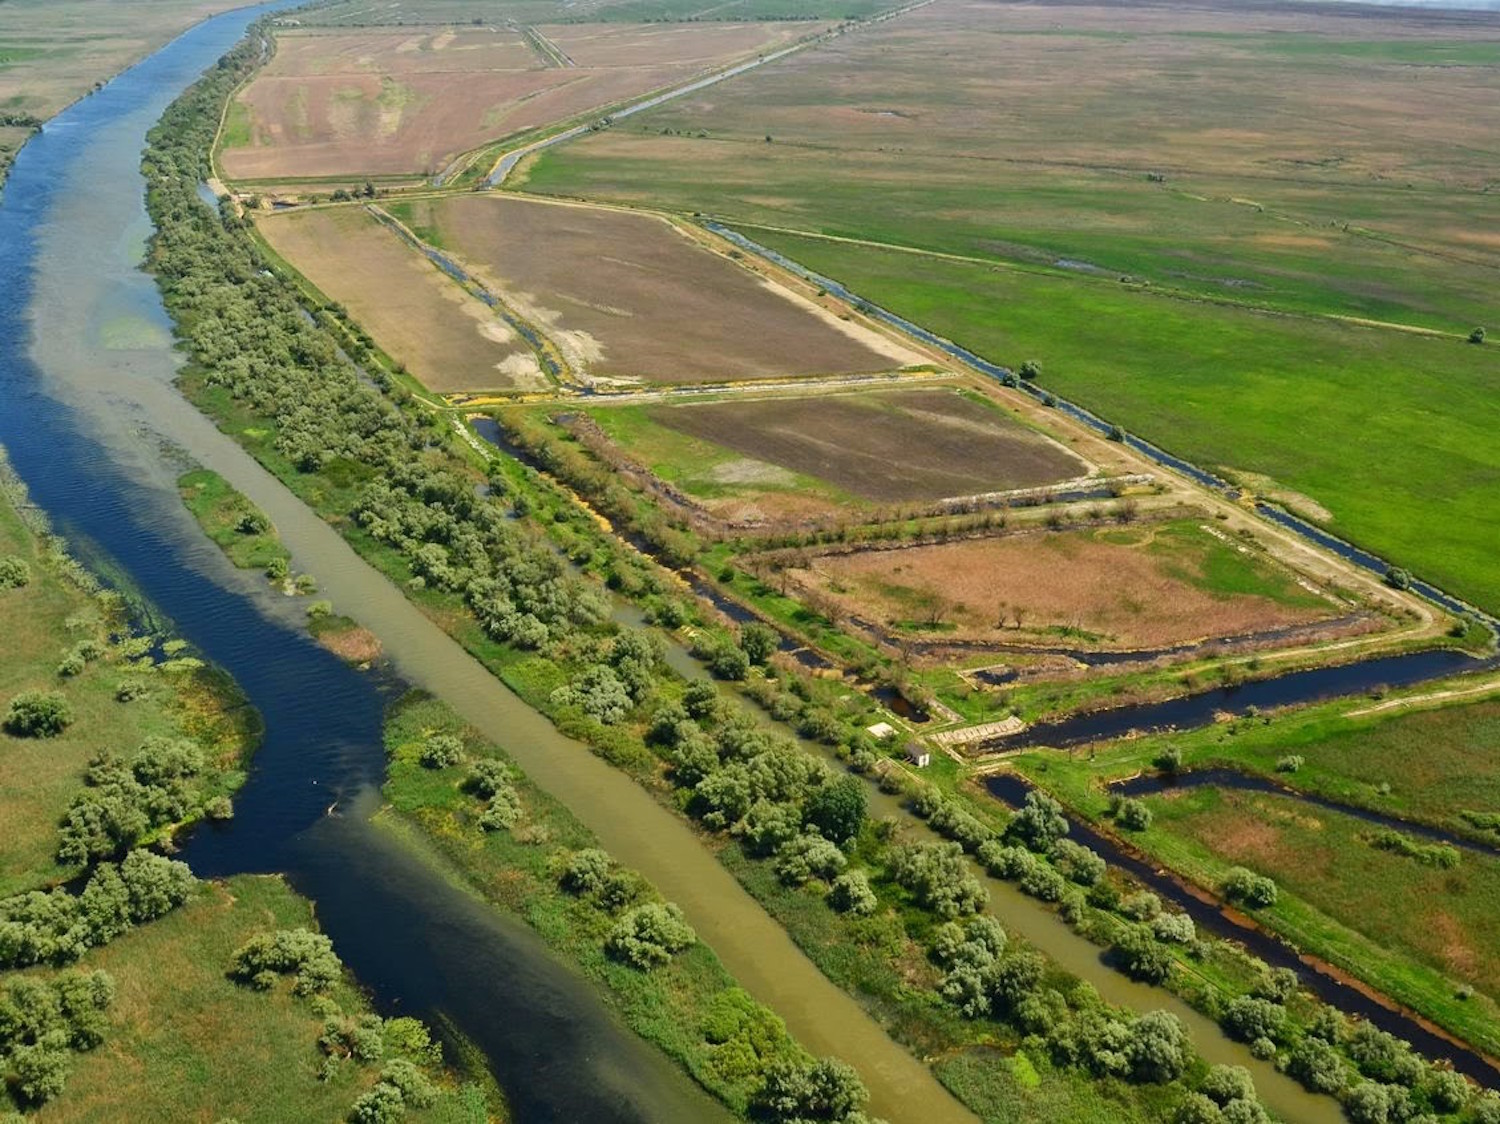 Dans le delta, il y a aussi des champs, pour l’agriculture. Ici, c’est une ancienne ferme piscicole, dont les bassins ont été transformés en terres agricoles (photo : Cristian Miteltu)